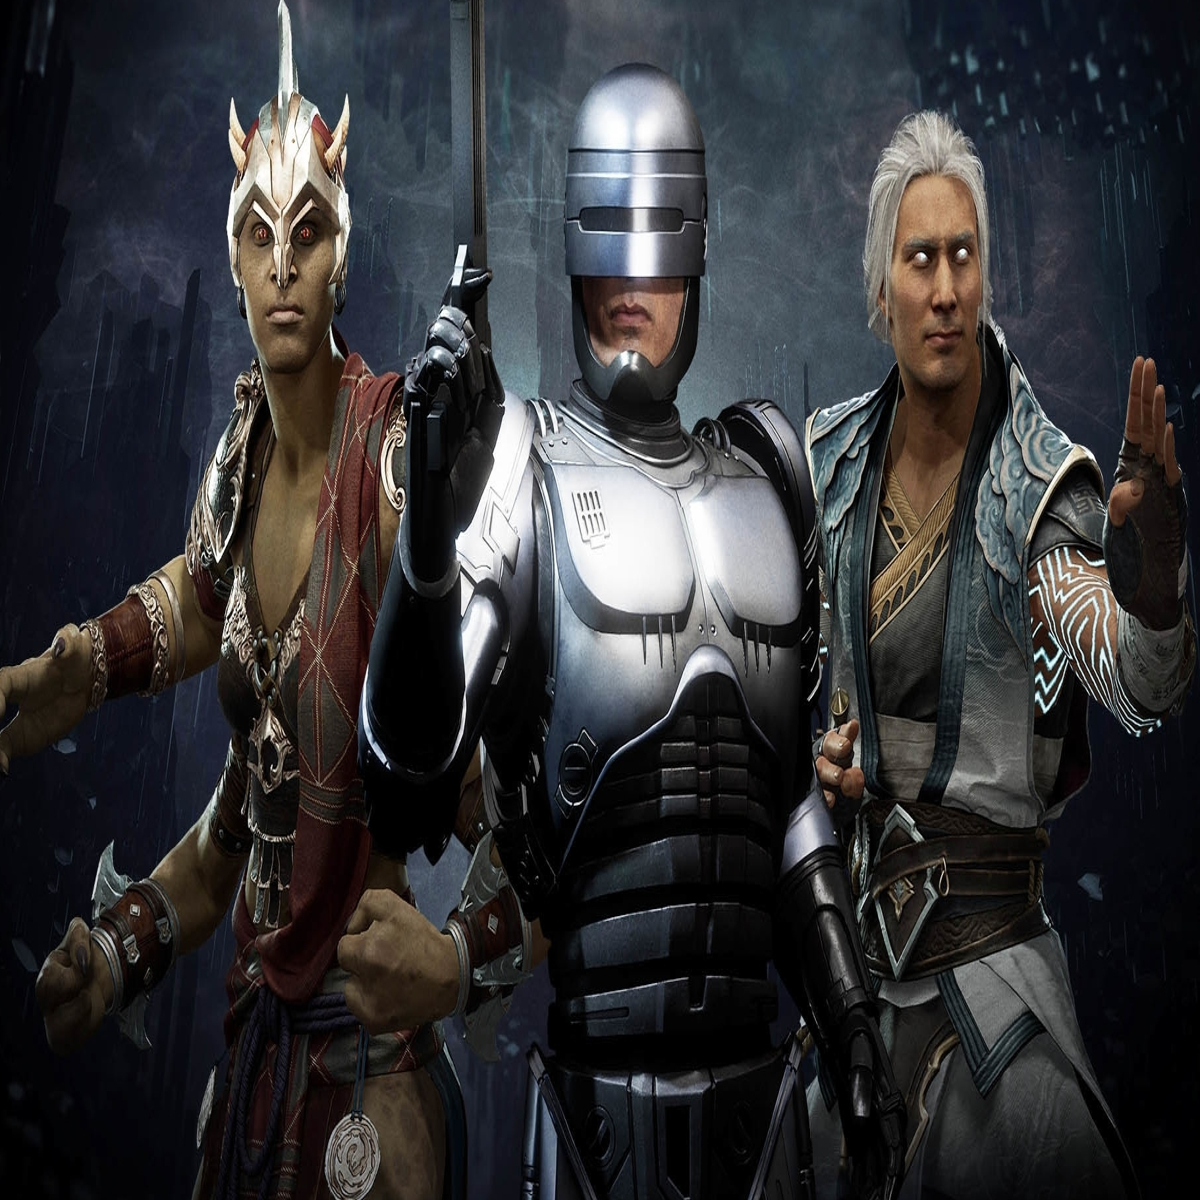 Play Mortal Kombat 6 28 People Online Free » Mortal Kombat games